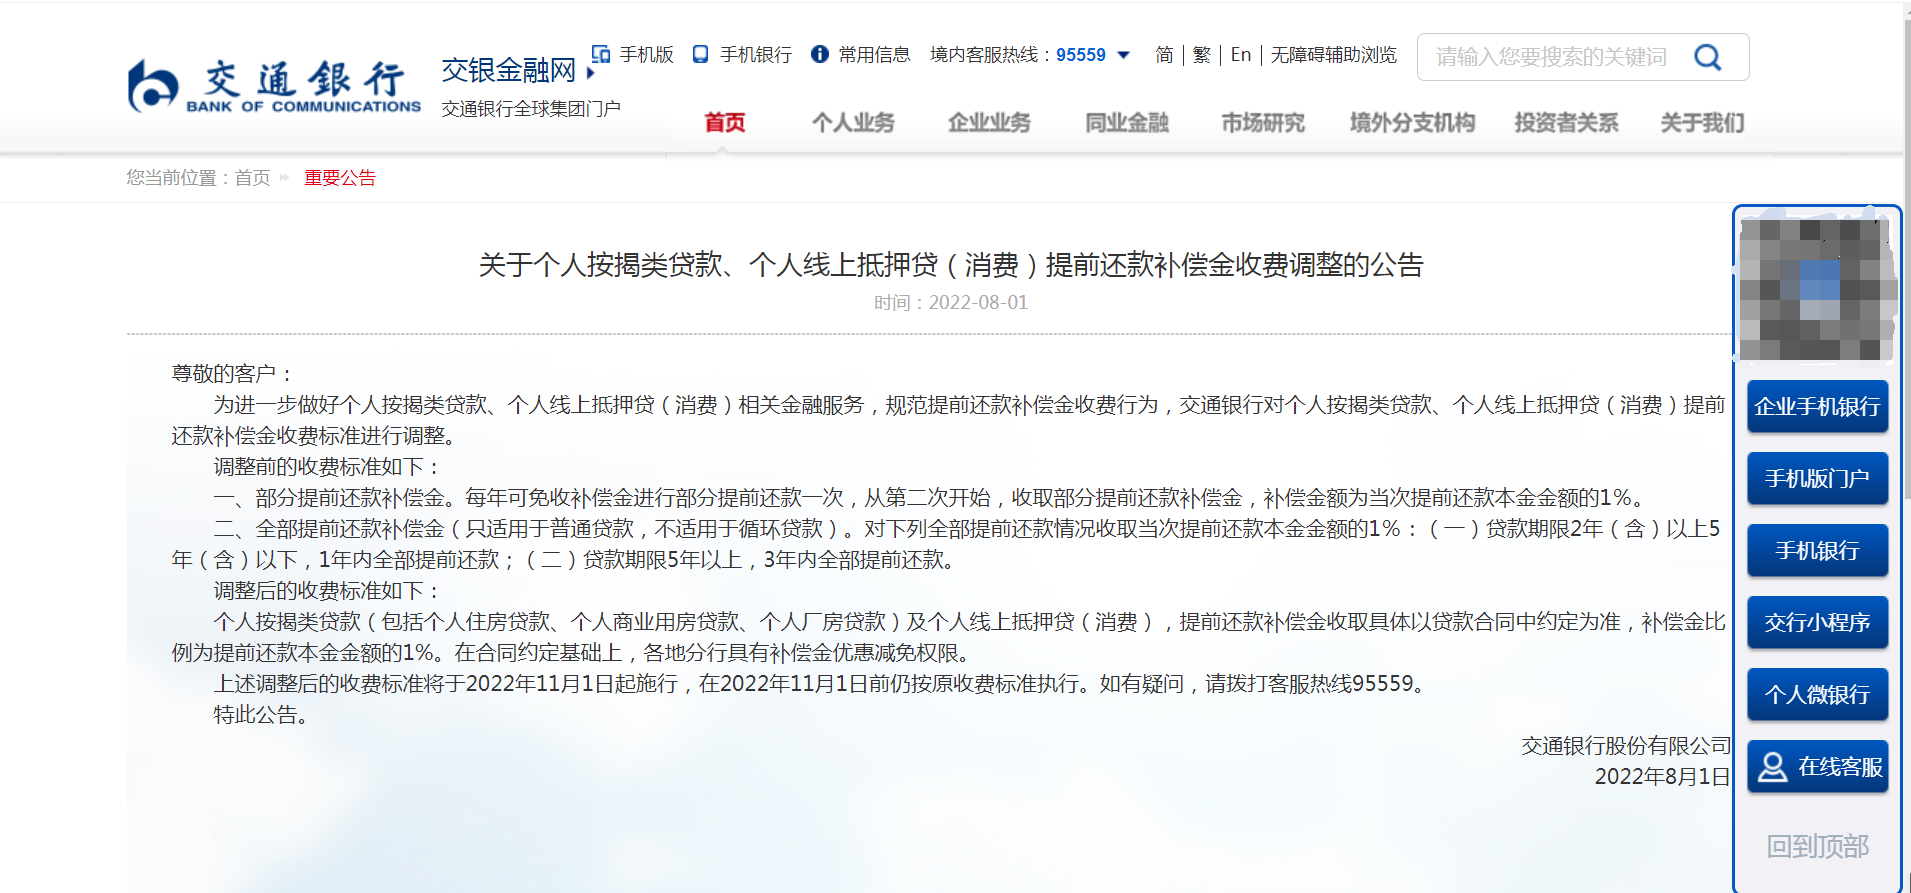 最新！交行调整“提前还款补偿金收费”惹争议公告已从官网删除！北京、上海交